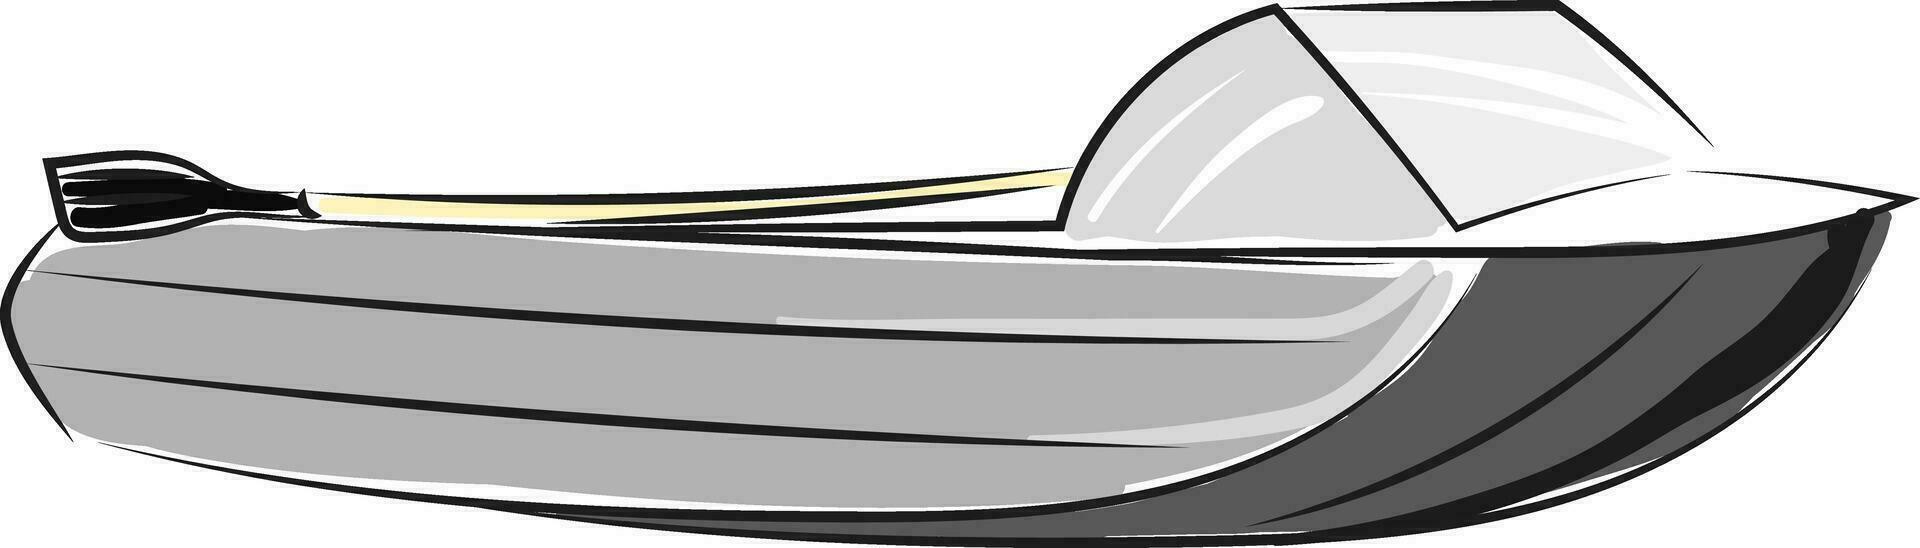 grigio velocità barca, vettore o colore illustrazione.